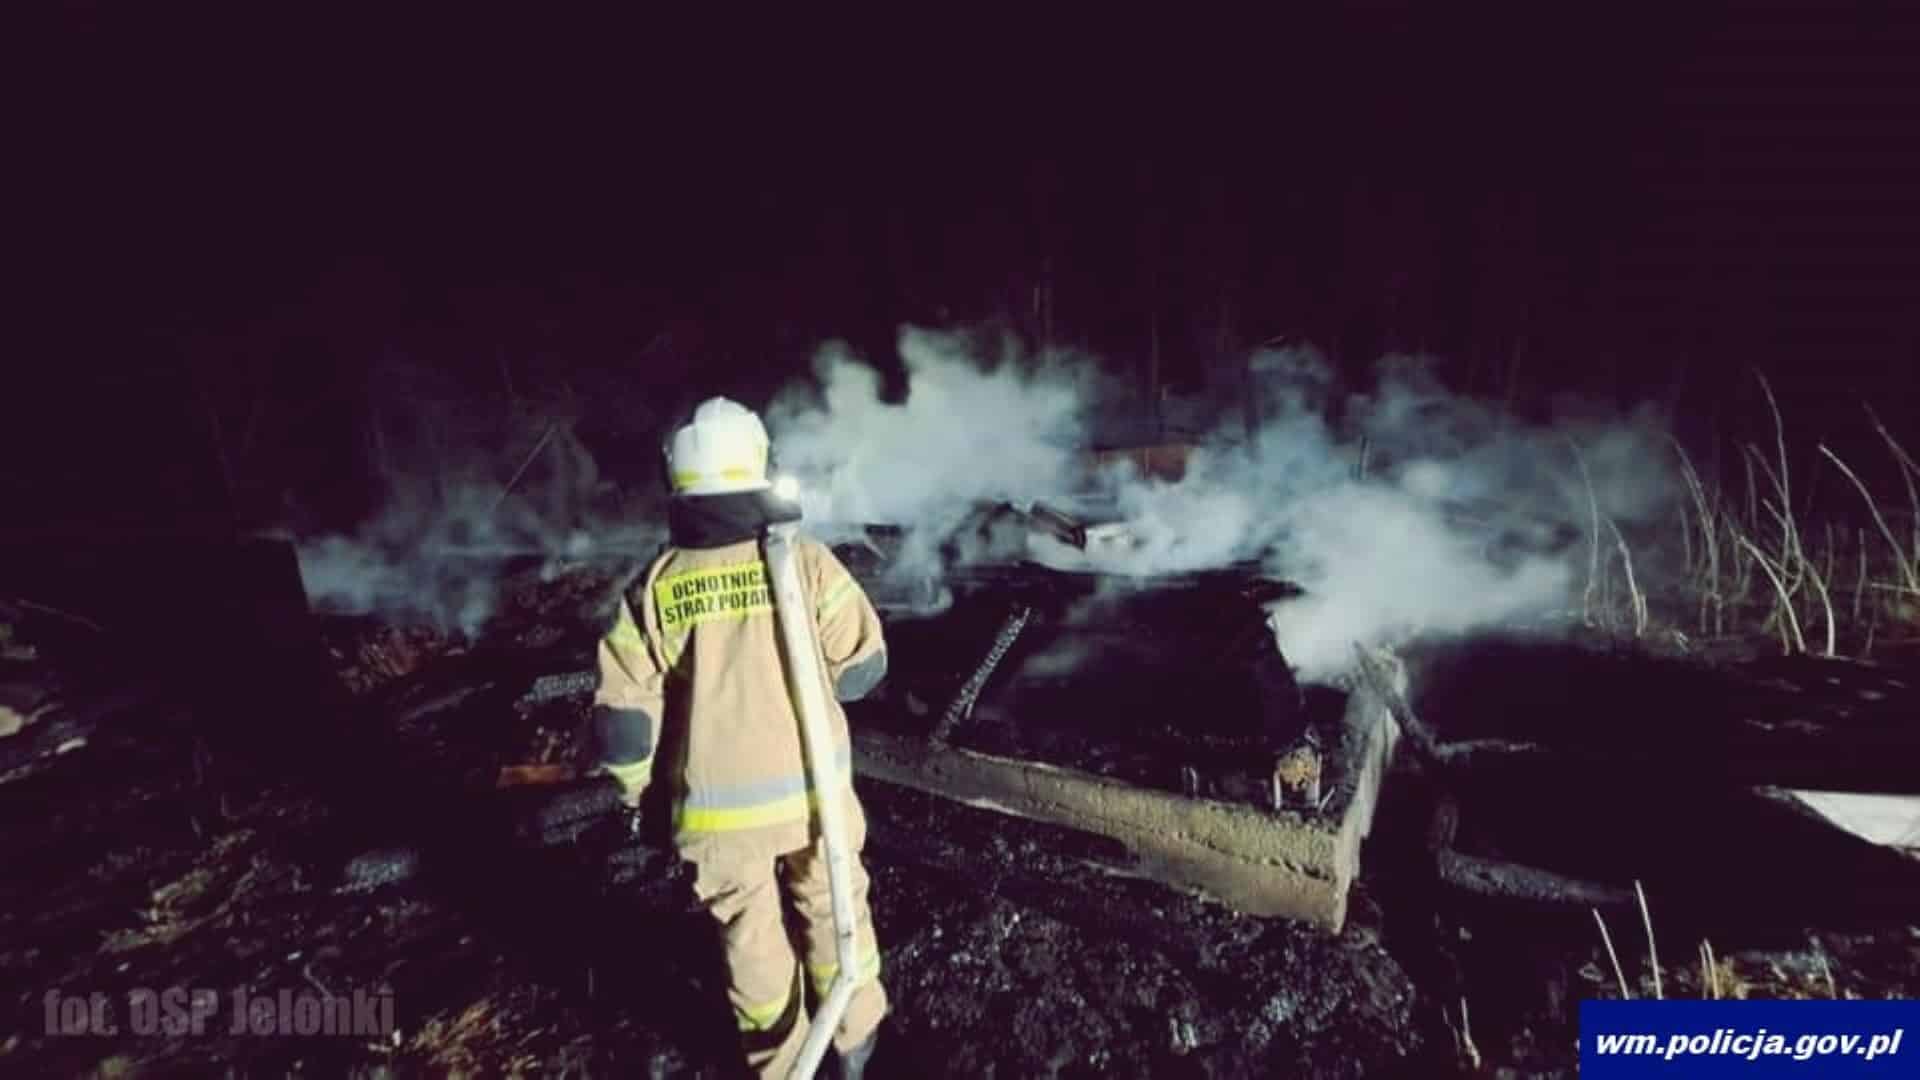 Spłonęła stodoła. 40-latek przyznaje się, że zrobił to dla zabawy pożar Olsztyn, Wiadomości, zemptypost, zPAP